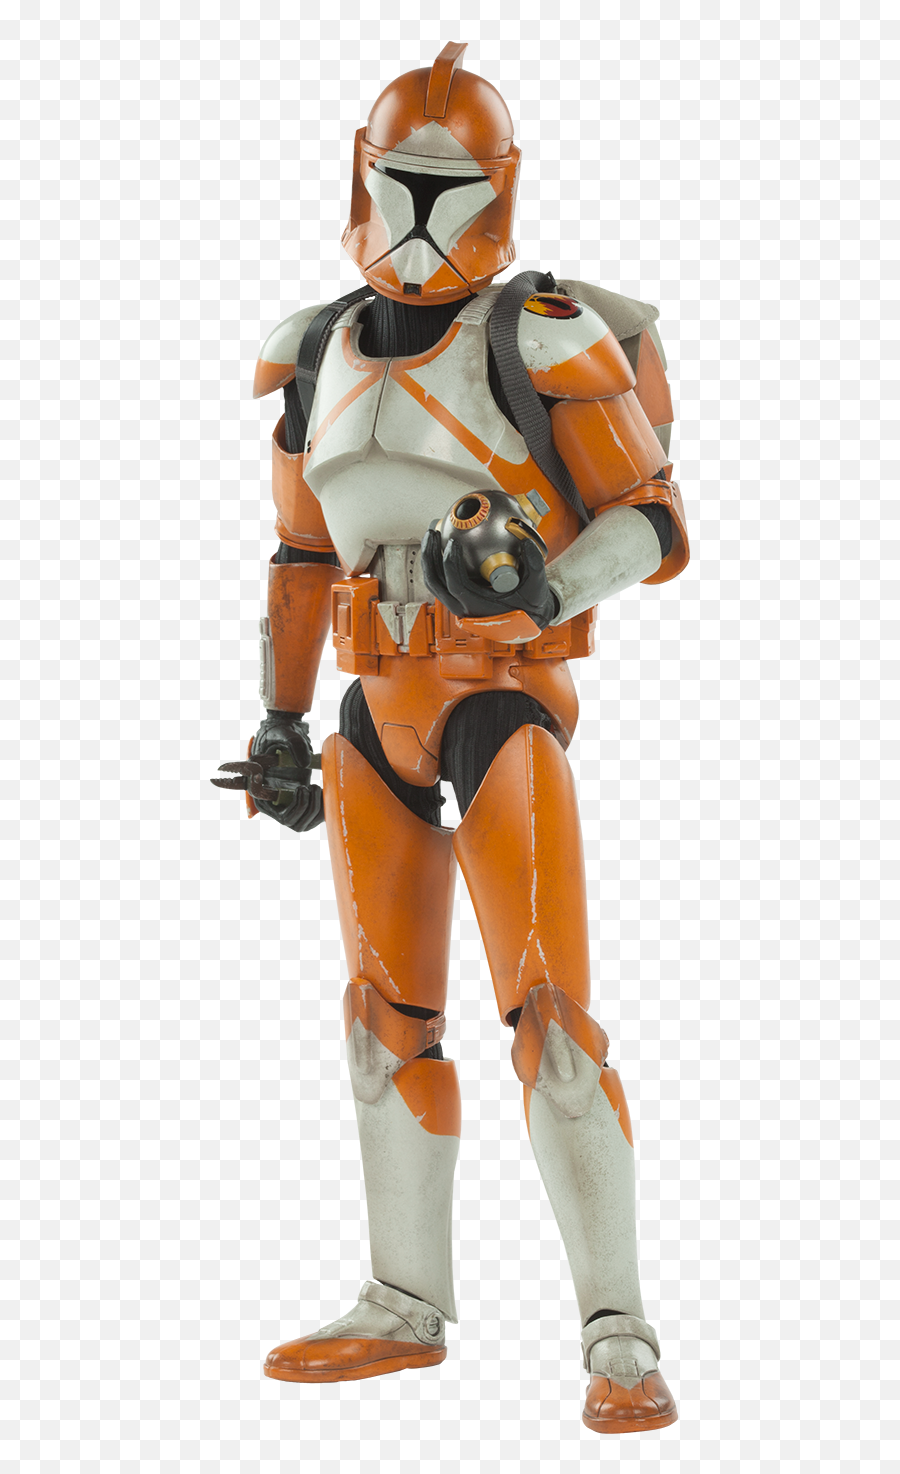 Star Wars Bomb Squad Clone Trooper Ordnance Specialist Sixt Emoji,Clone Trooper Png